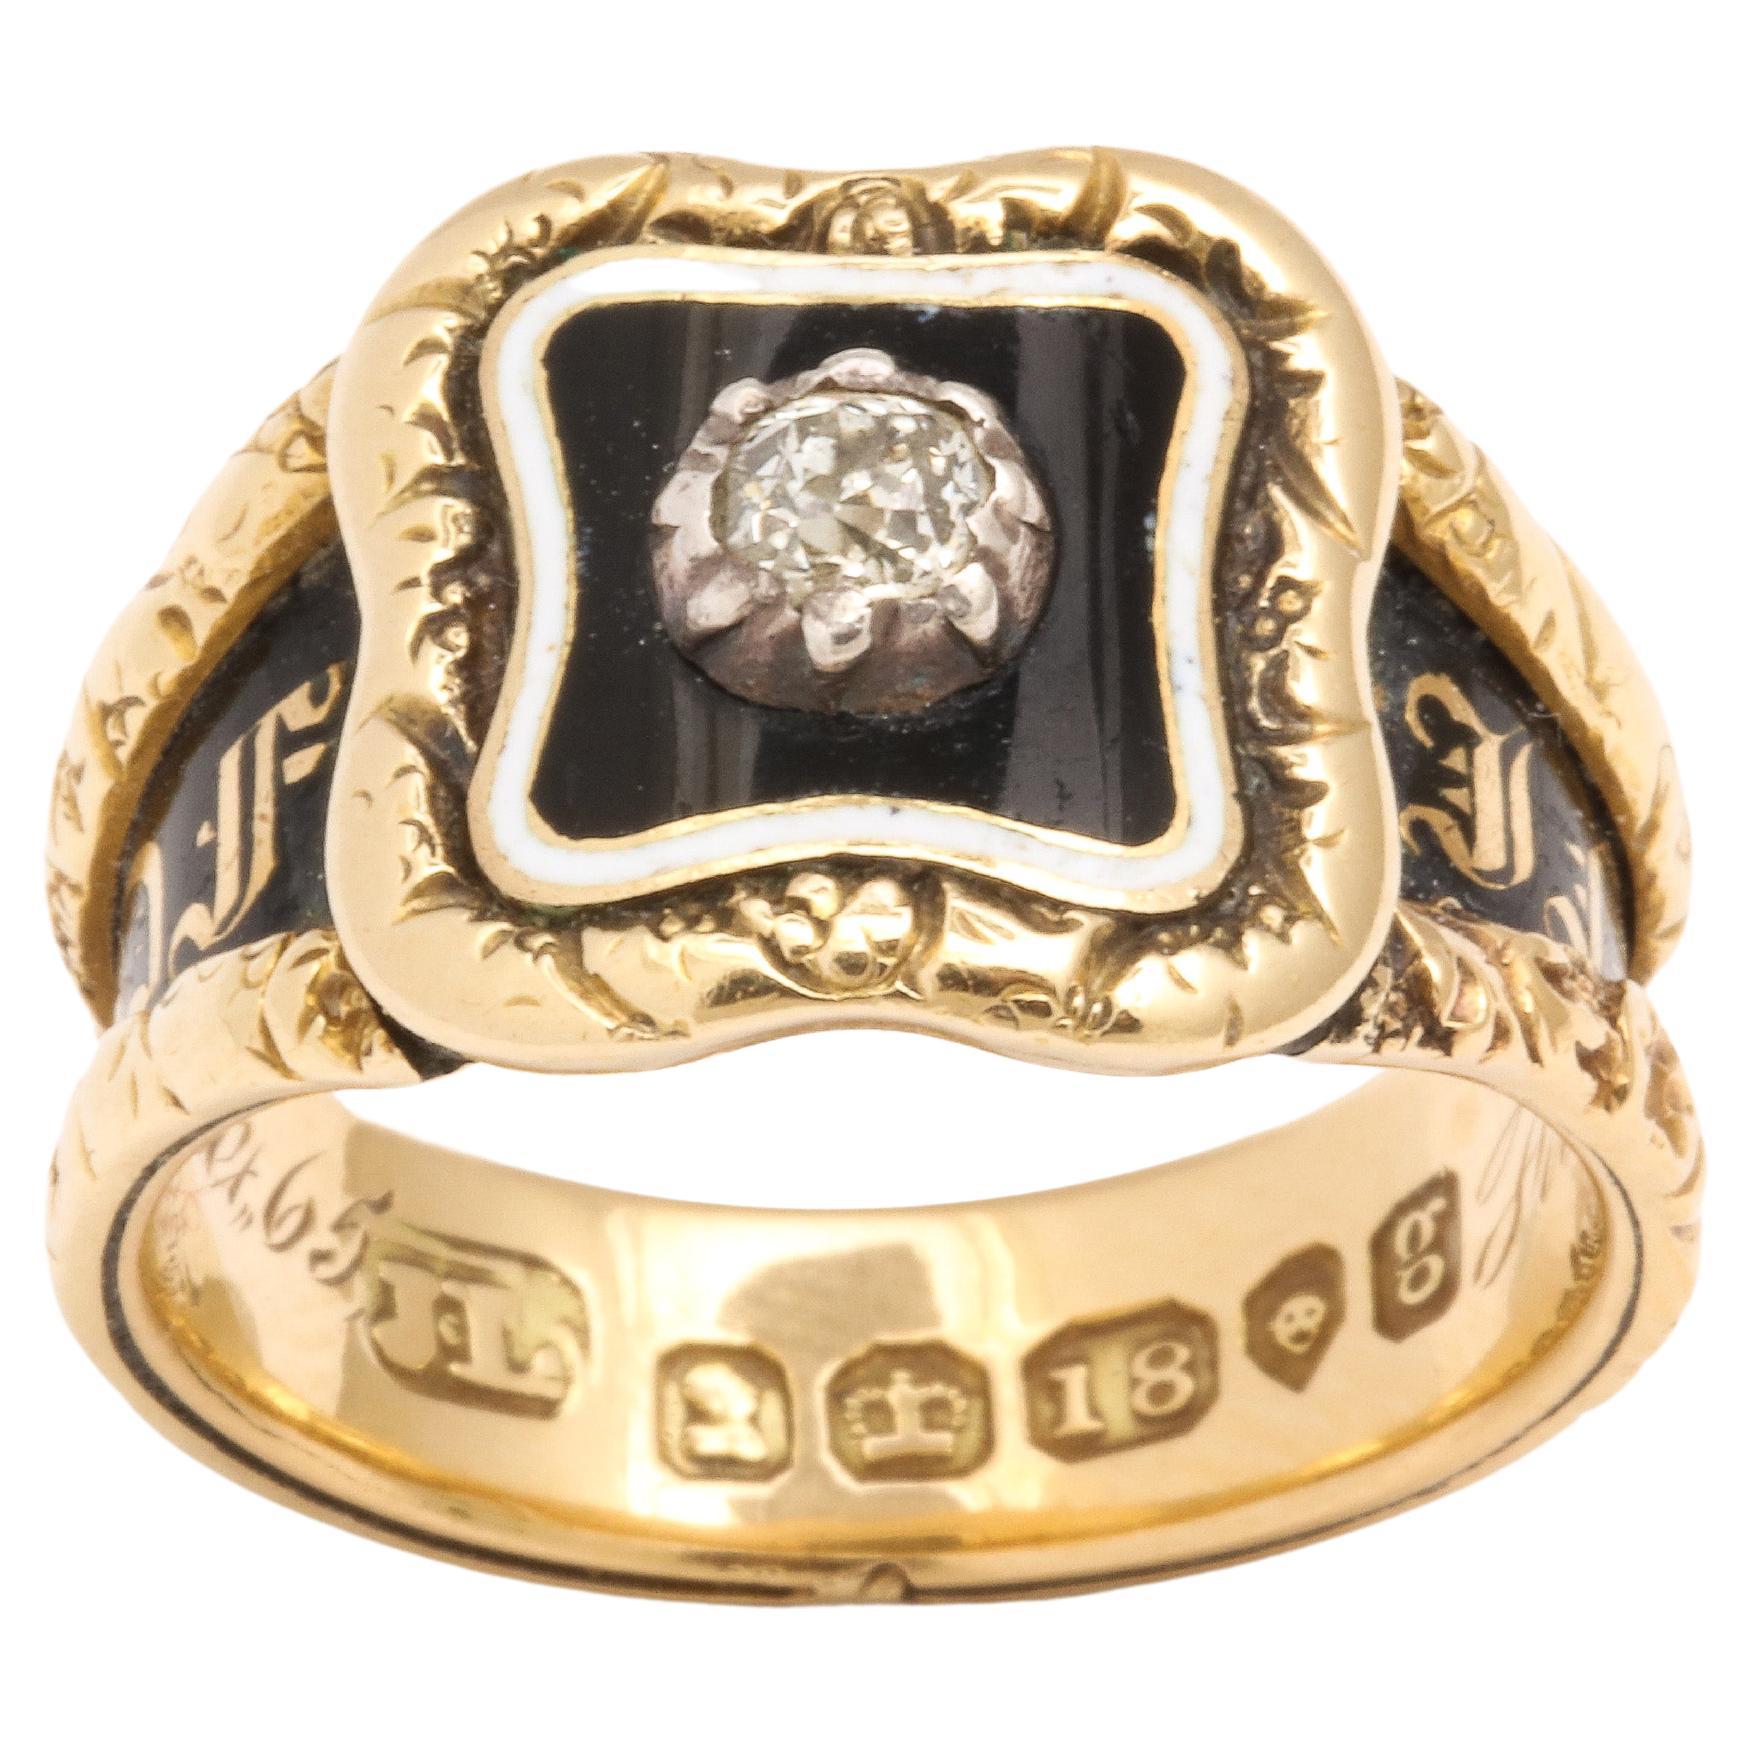 Une bague historique de taille moyenne en 18 Kt et diamants, aussi bonne que possible, a été réalisée par John Linnet.
Linnet  était réputé pour ses travaux fins et délicats. Il a fabriqué des bijoux pour la reine Victoria. La bague est remarquable.